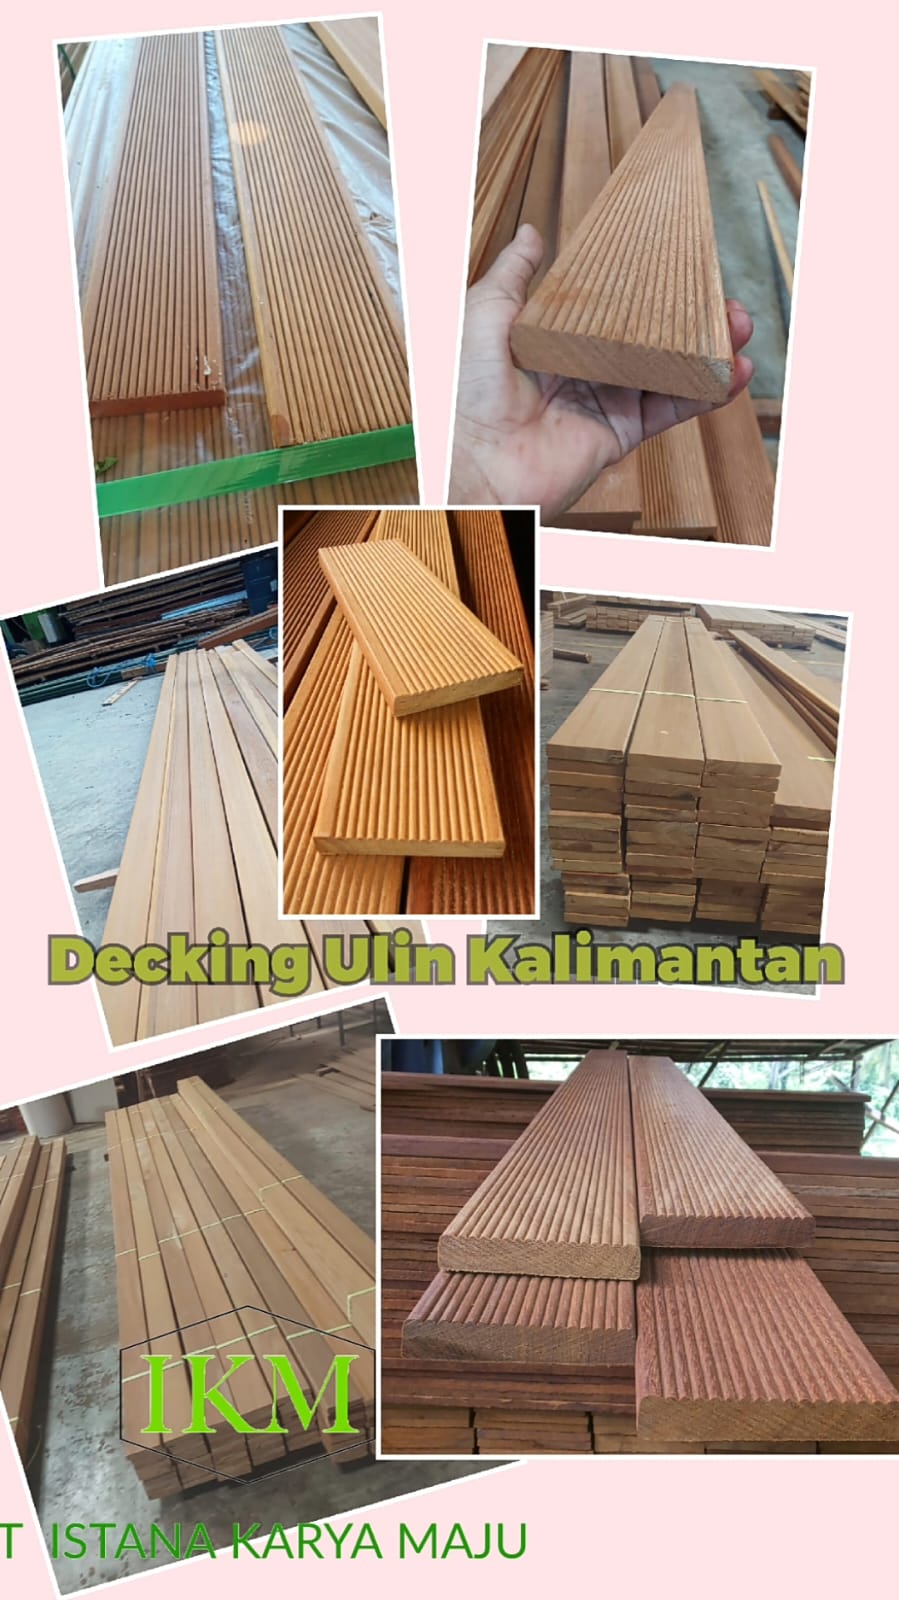 Decking Kayu Ulin